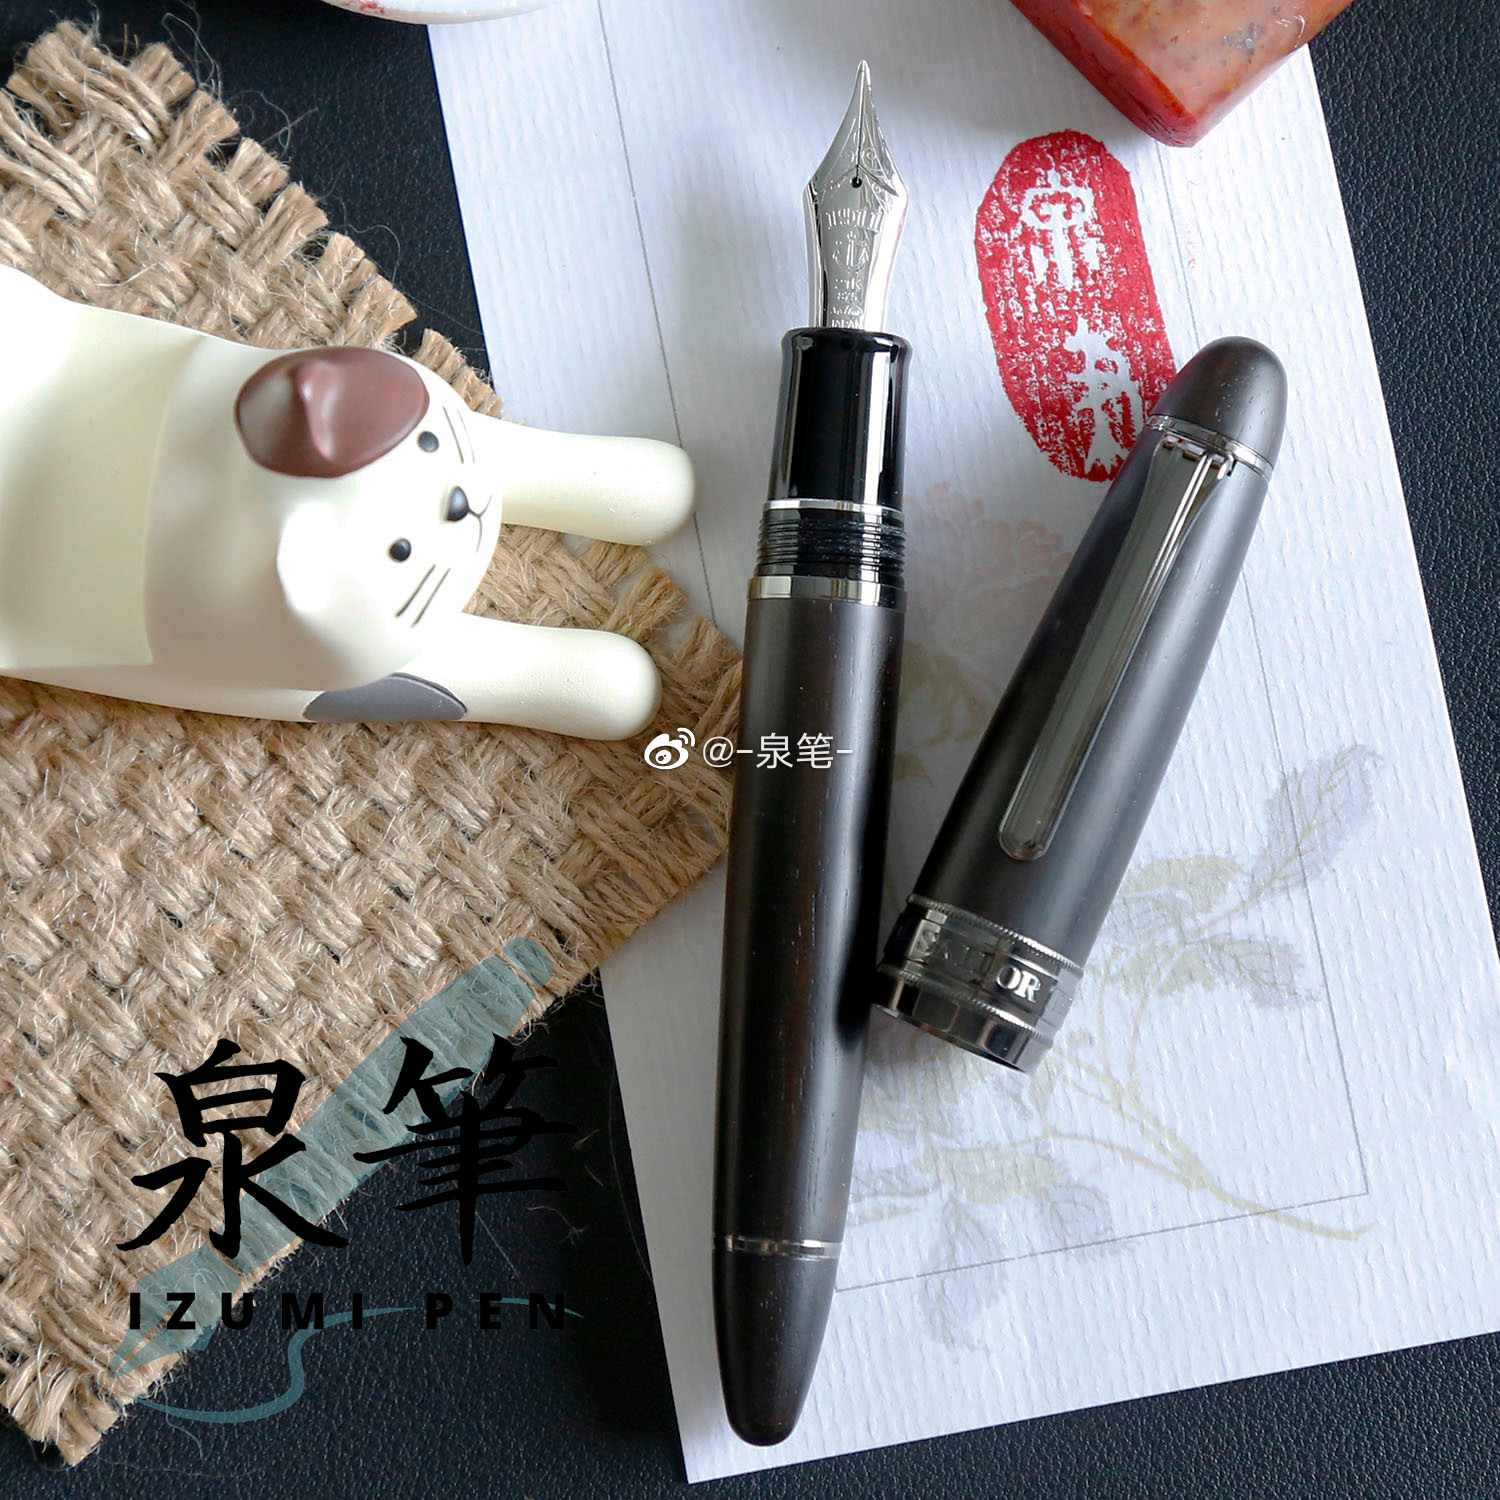 泉笔写乐钢笔硬橡胶笔王长刀研海波红炎绿响送礼书写练字- Taobao